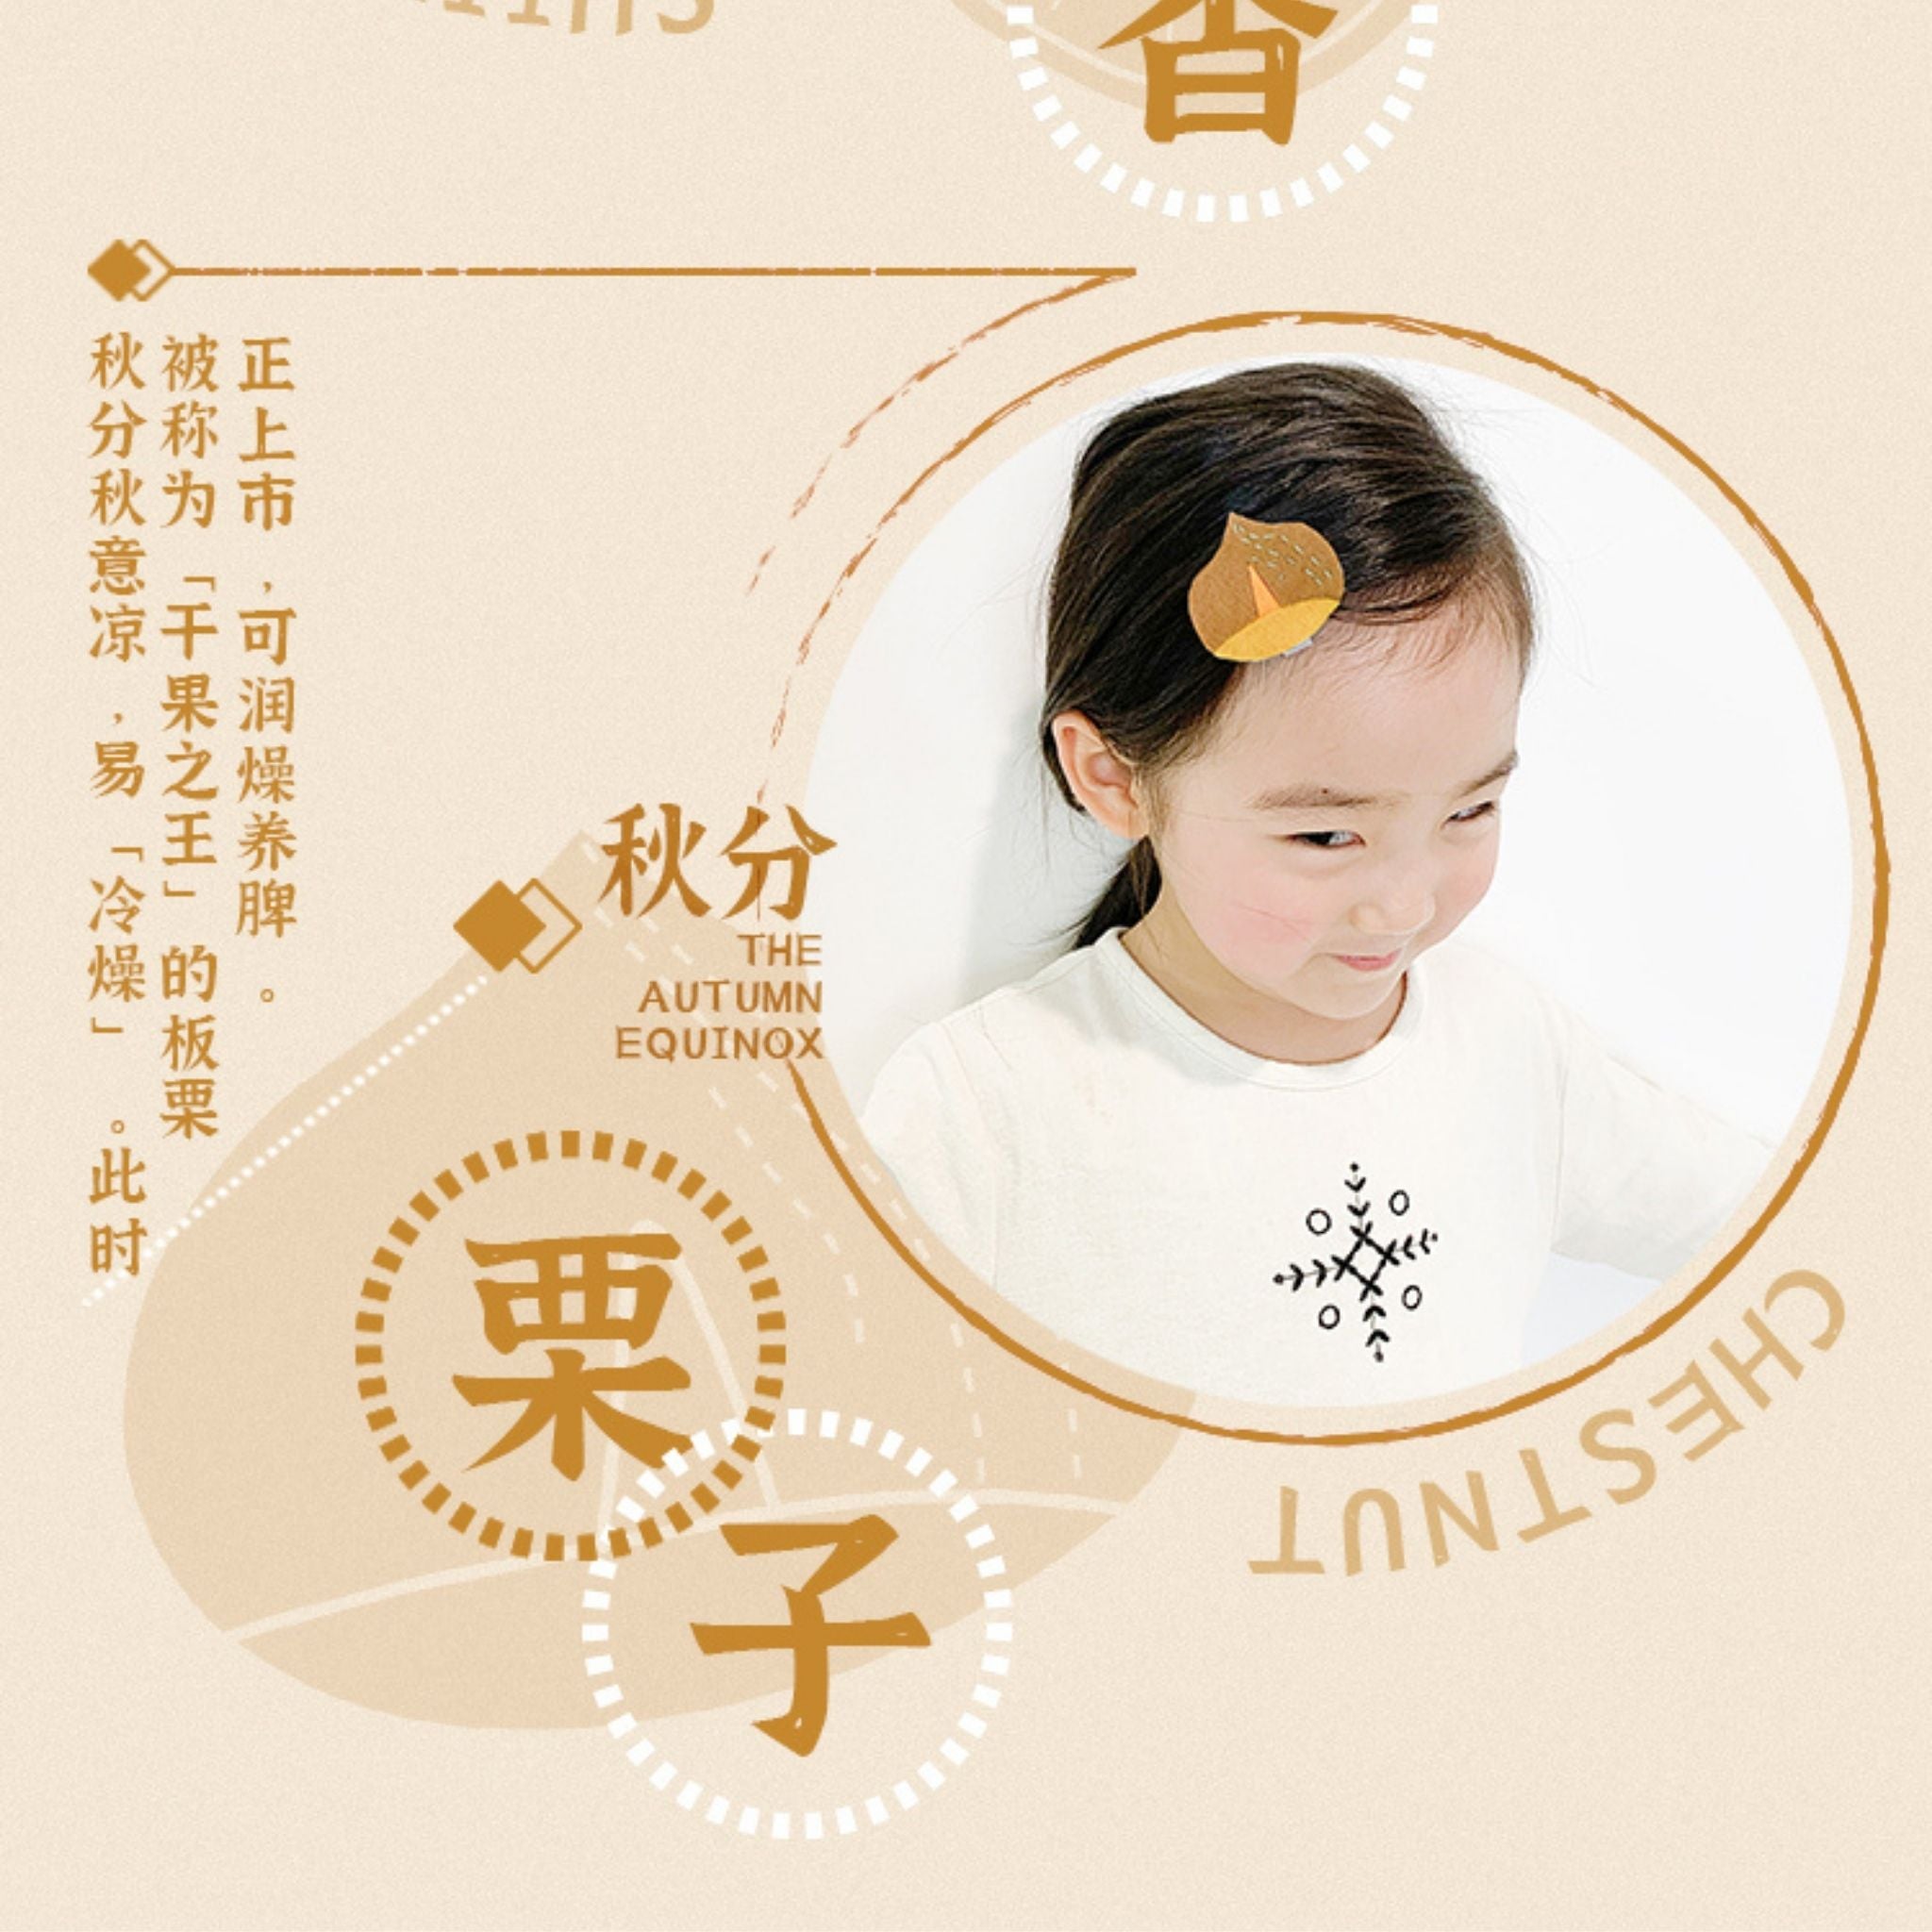 24 Solar Terms Kids Hair Accessories (AUTUMN 秋)